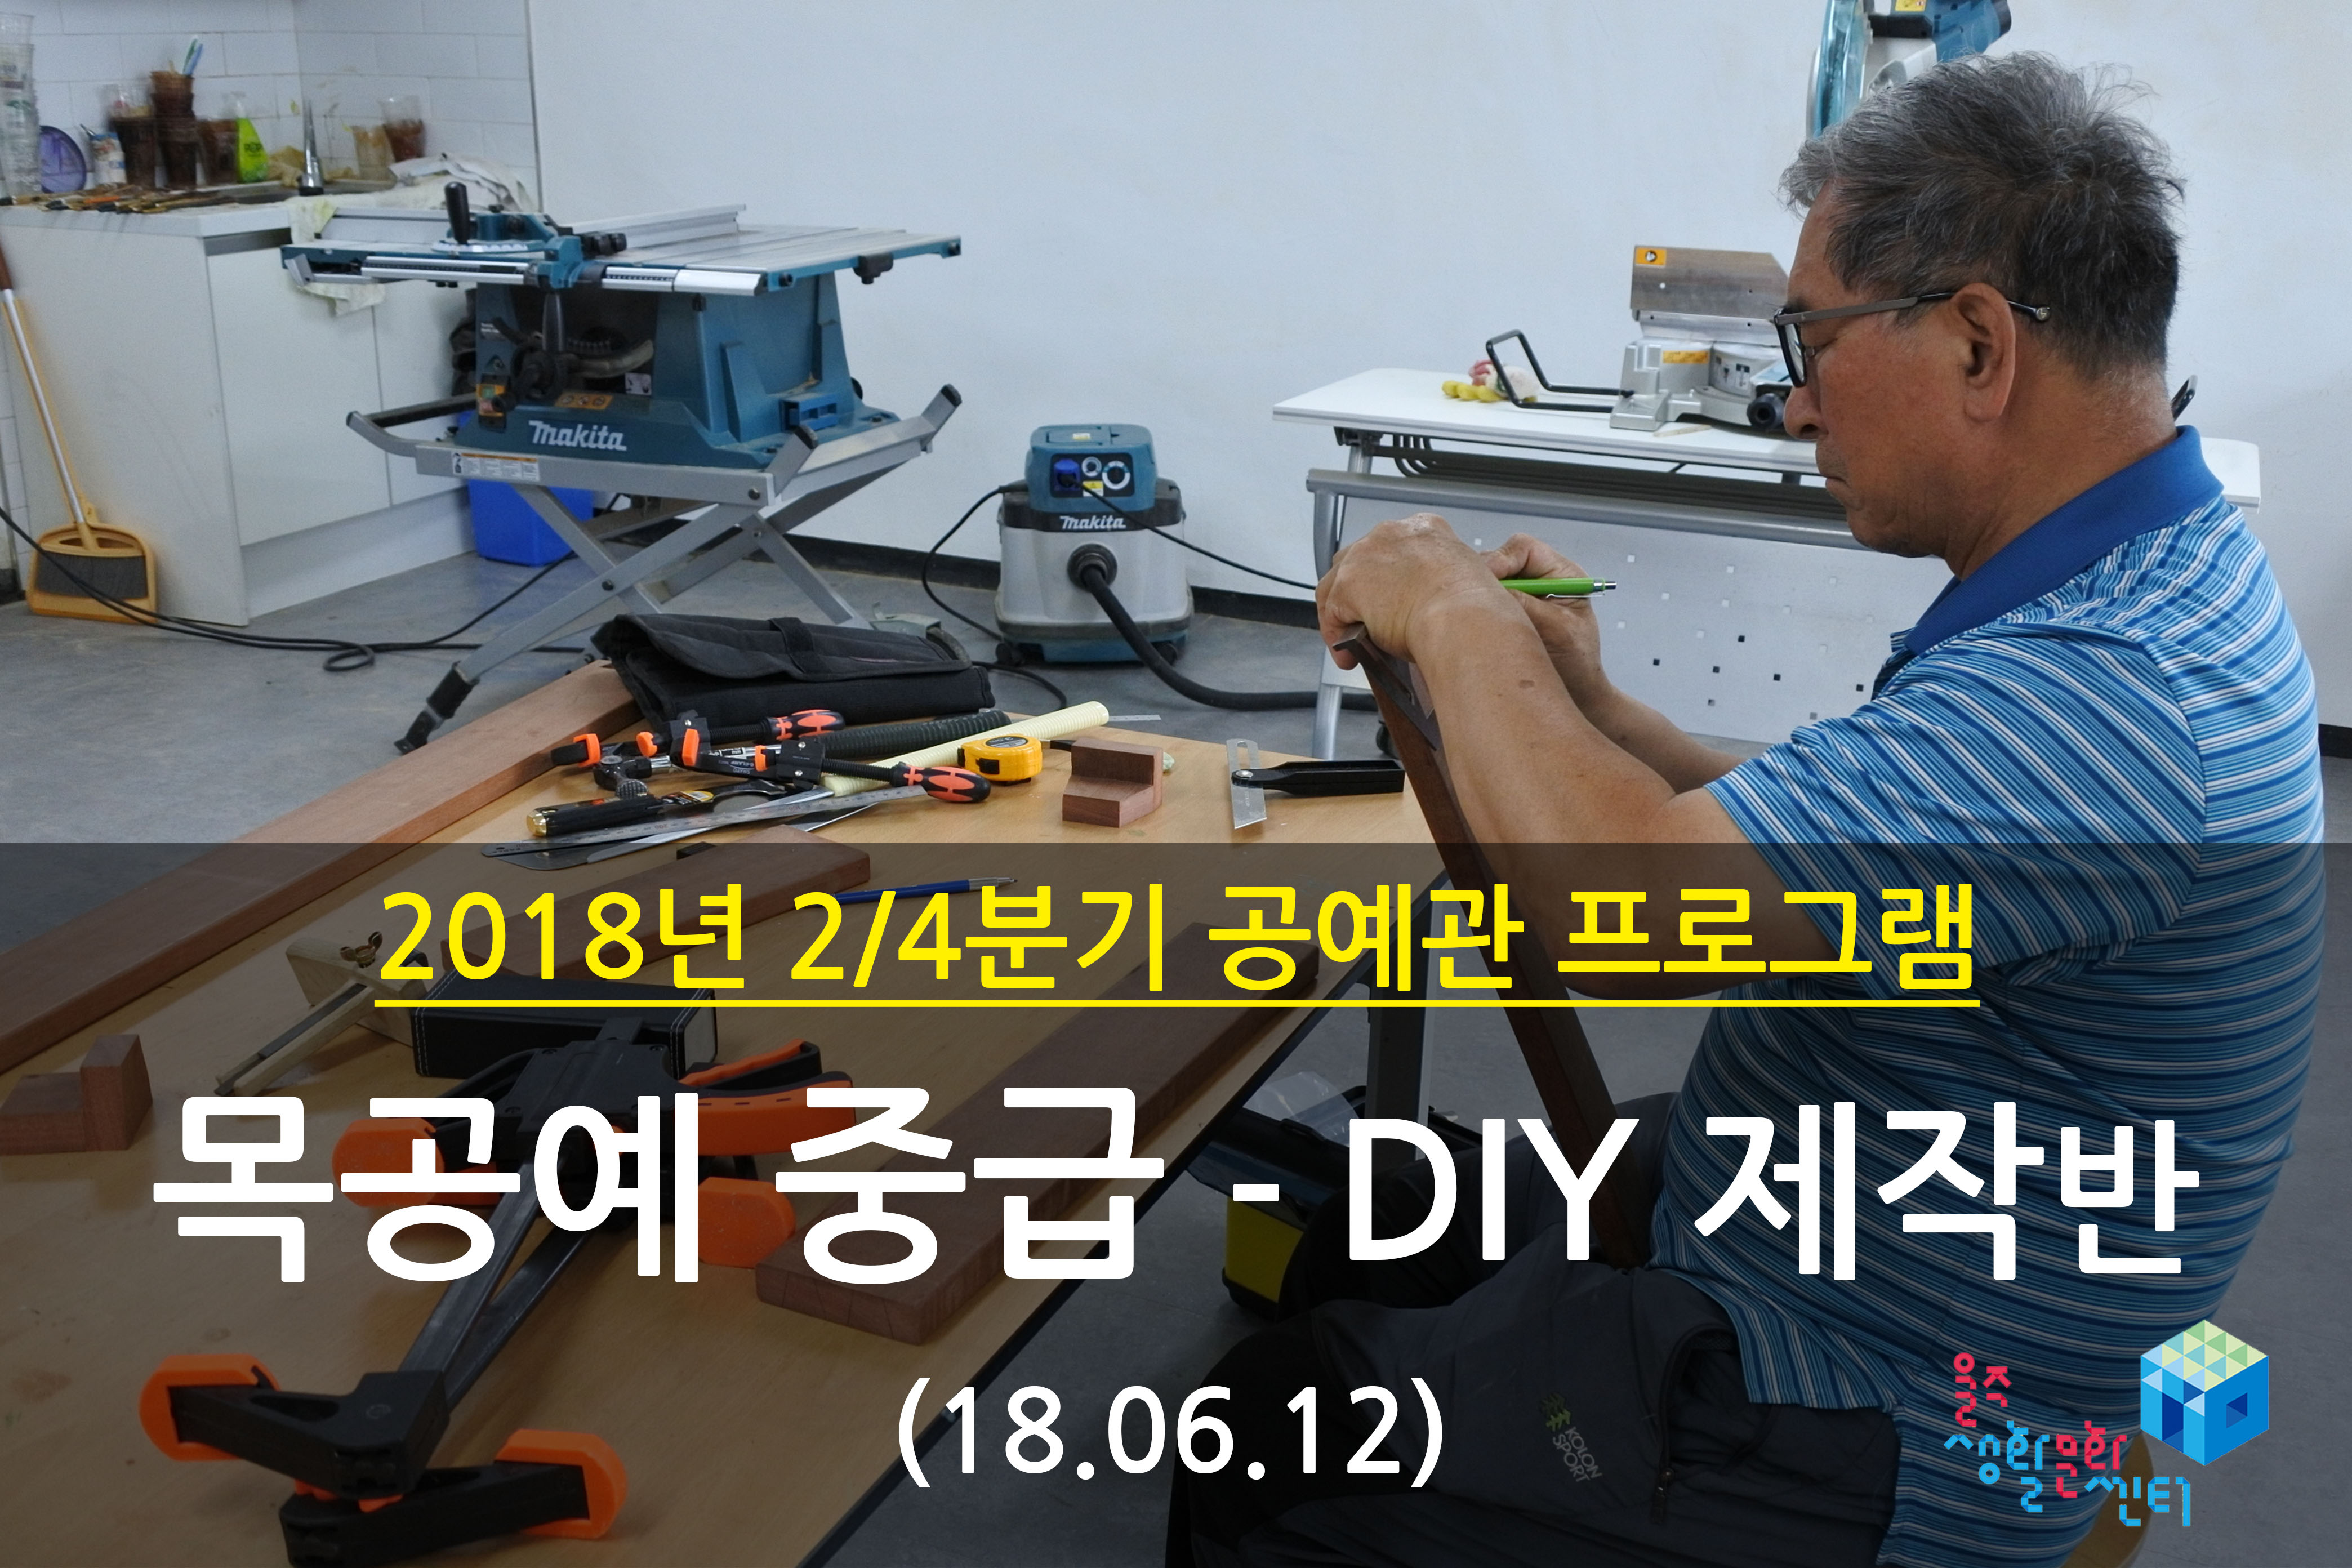 2018.06.12 _ 목공예 중급 - DIY 제작반 _ 2/4분기 10주차 수업